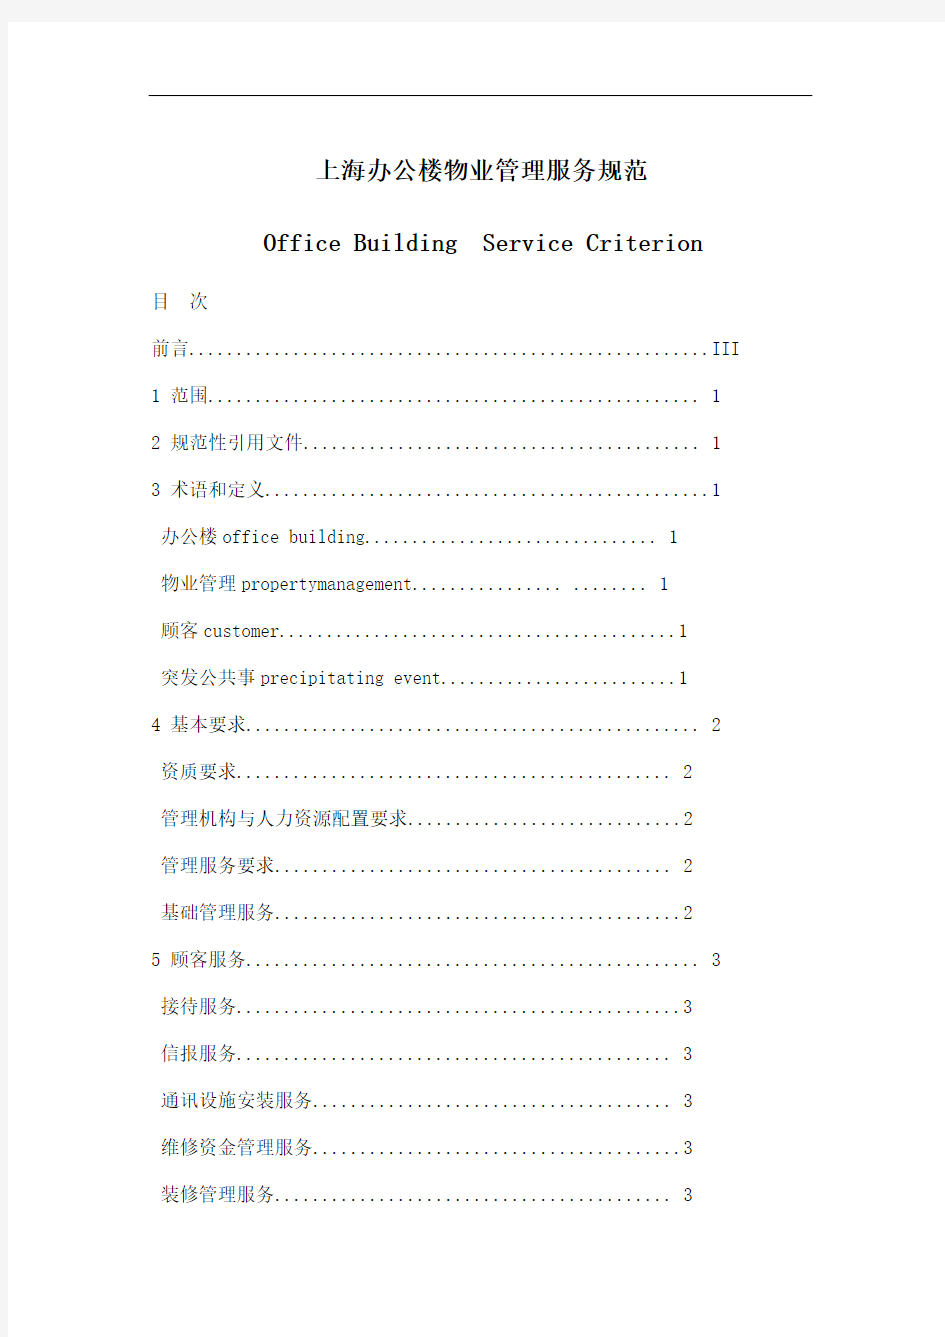 上海办公楼物业管理服务规范